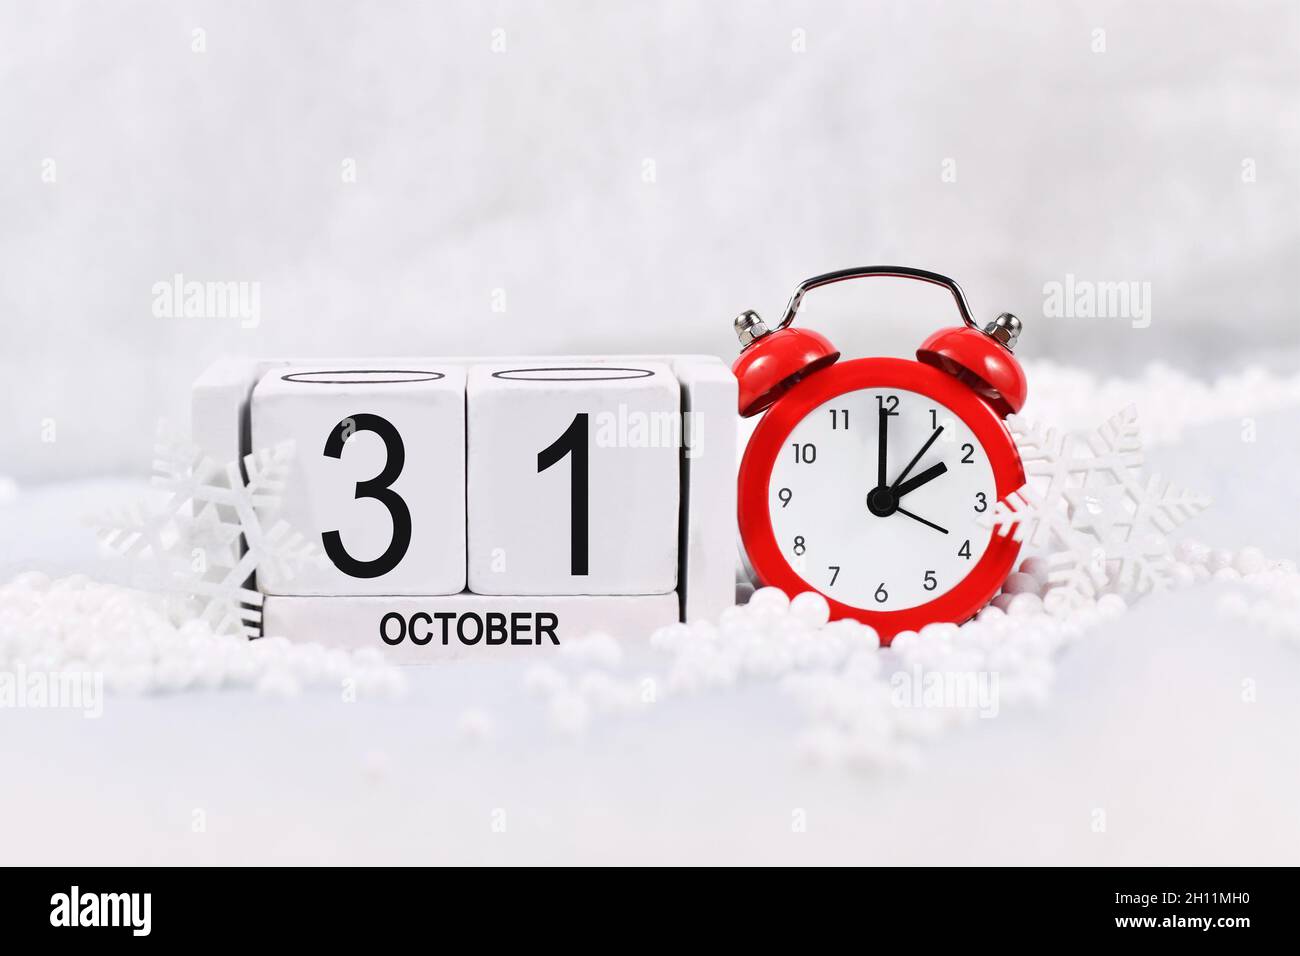 Concepto de cambio de hora para el horario de verano en Europa el 31st de octubre con reloj de alarma rojo y calendario en la nieve Foto de stock